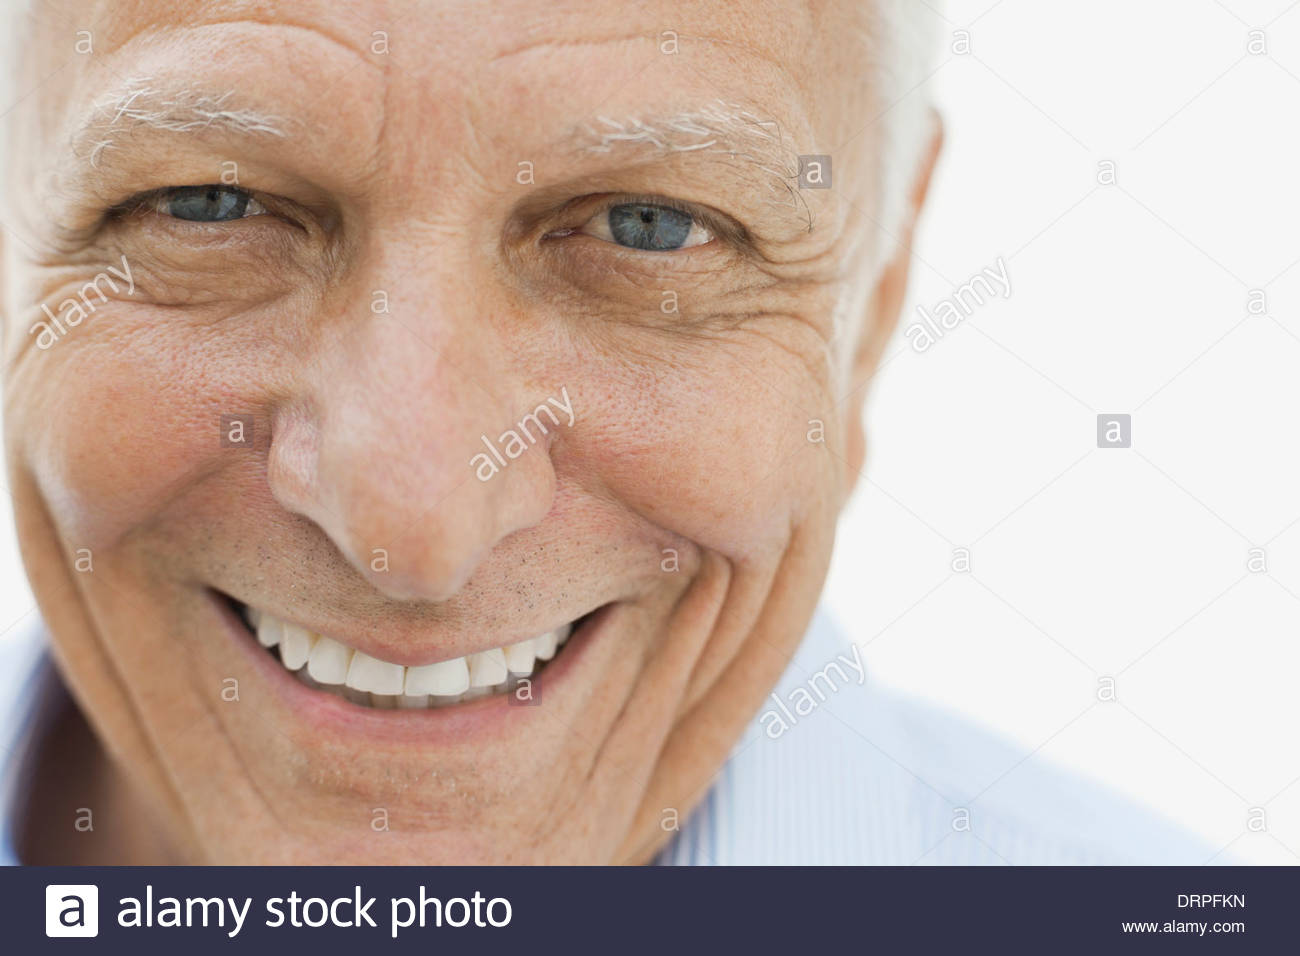 Close-up portrait of smiling man Banque D'Images